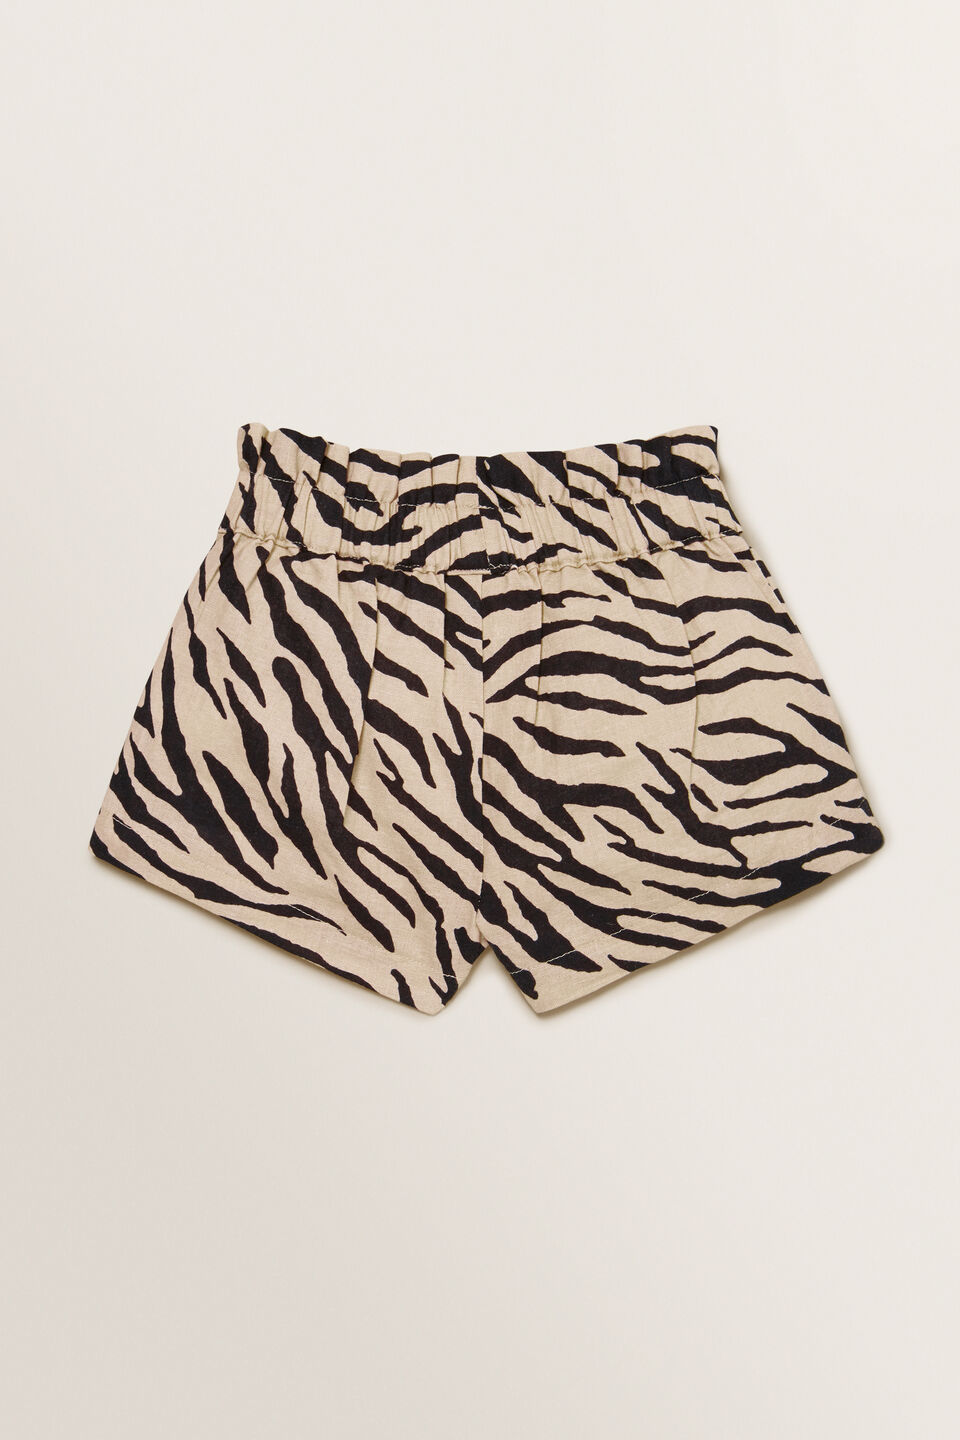 Zebra Shorts  